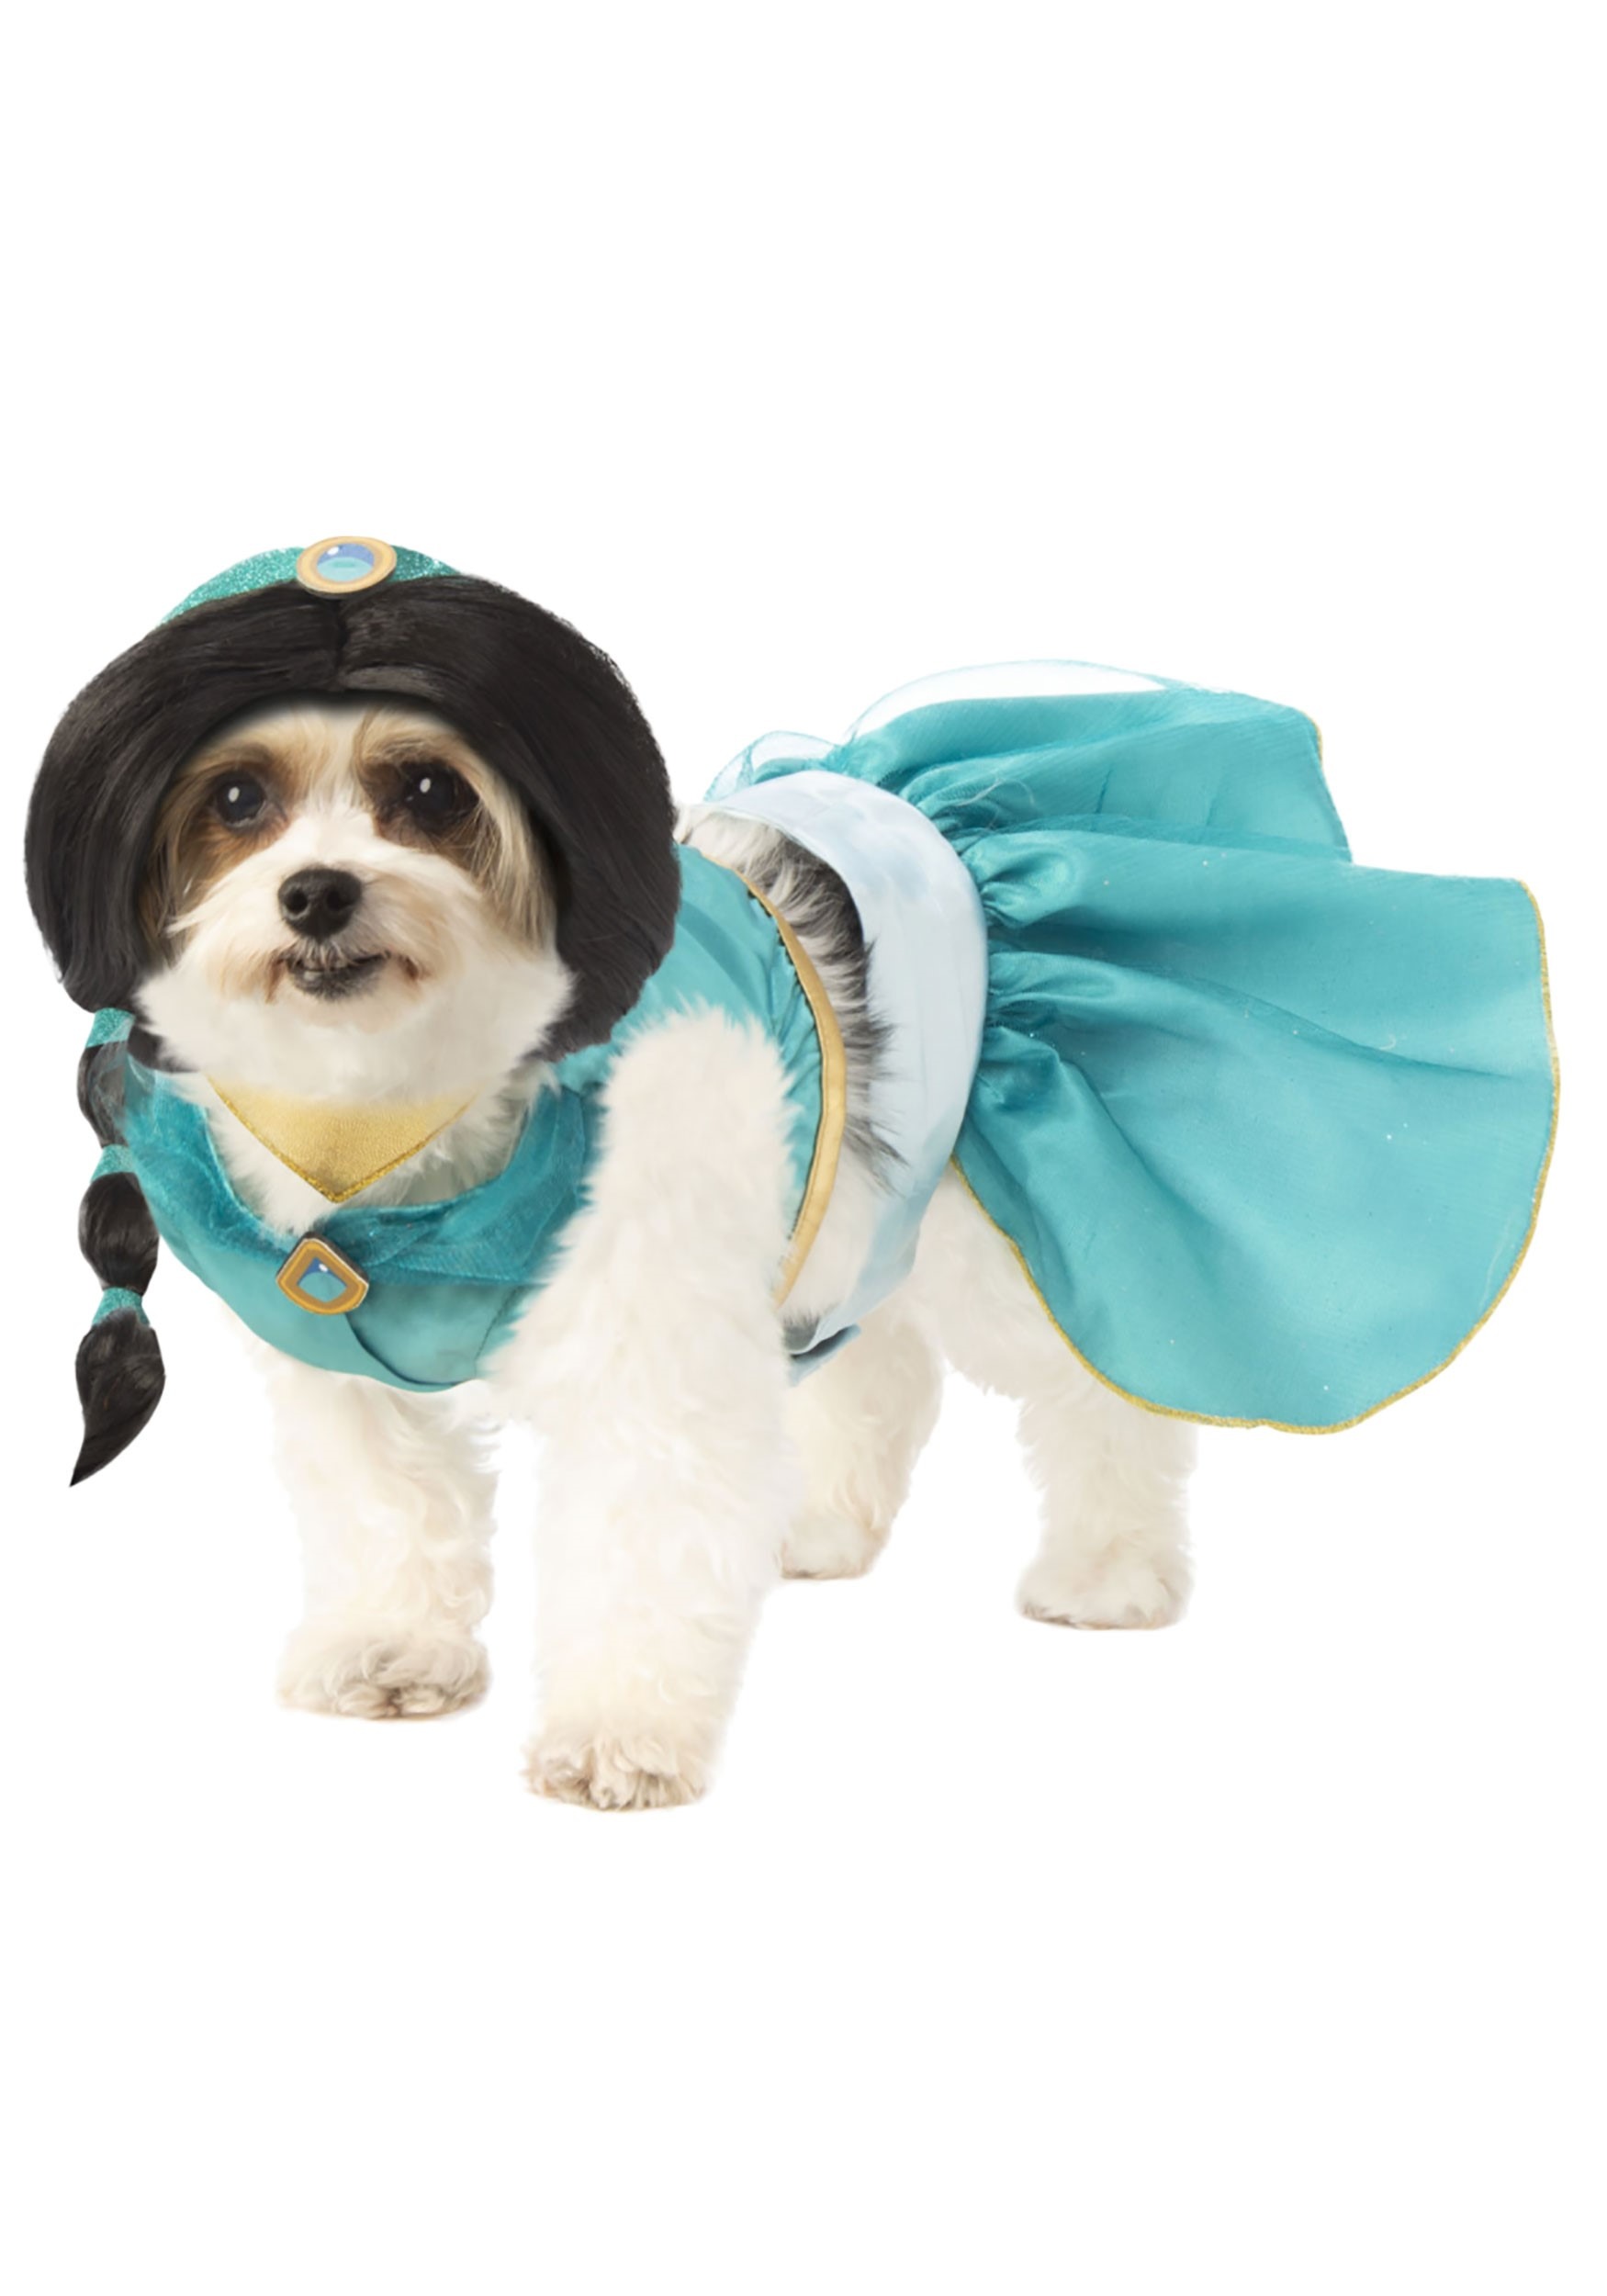 Aladdin Jasmine Dog Costume | Disney Dog Costumes